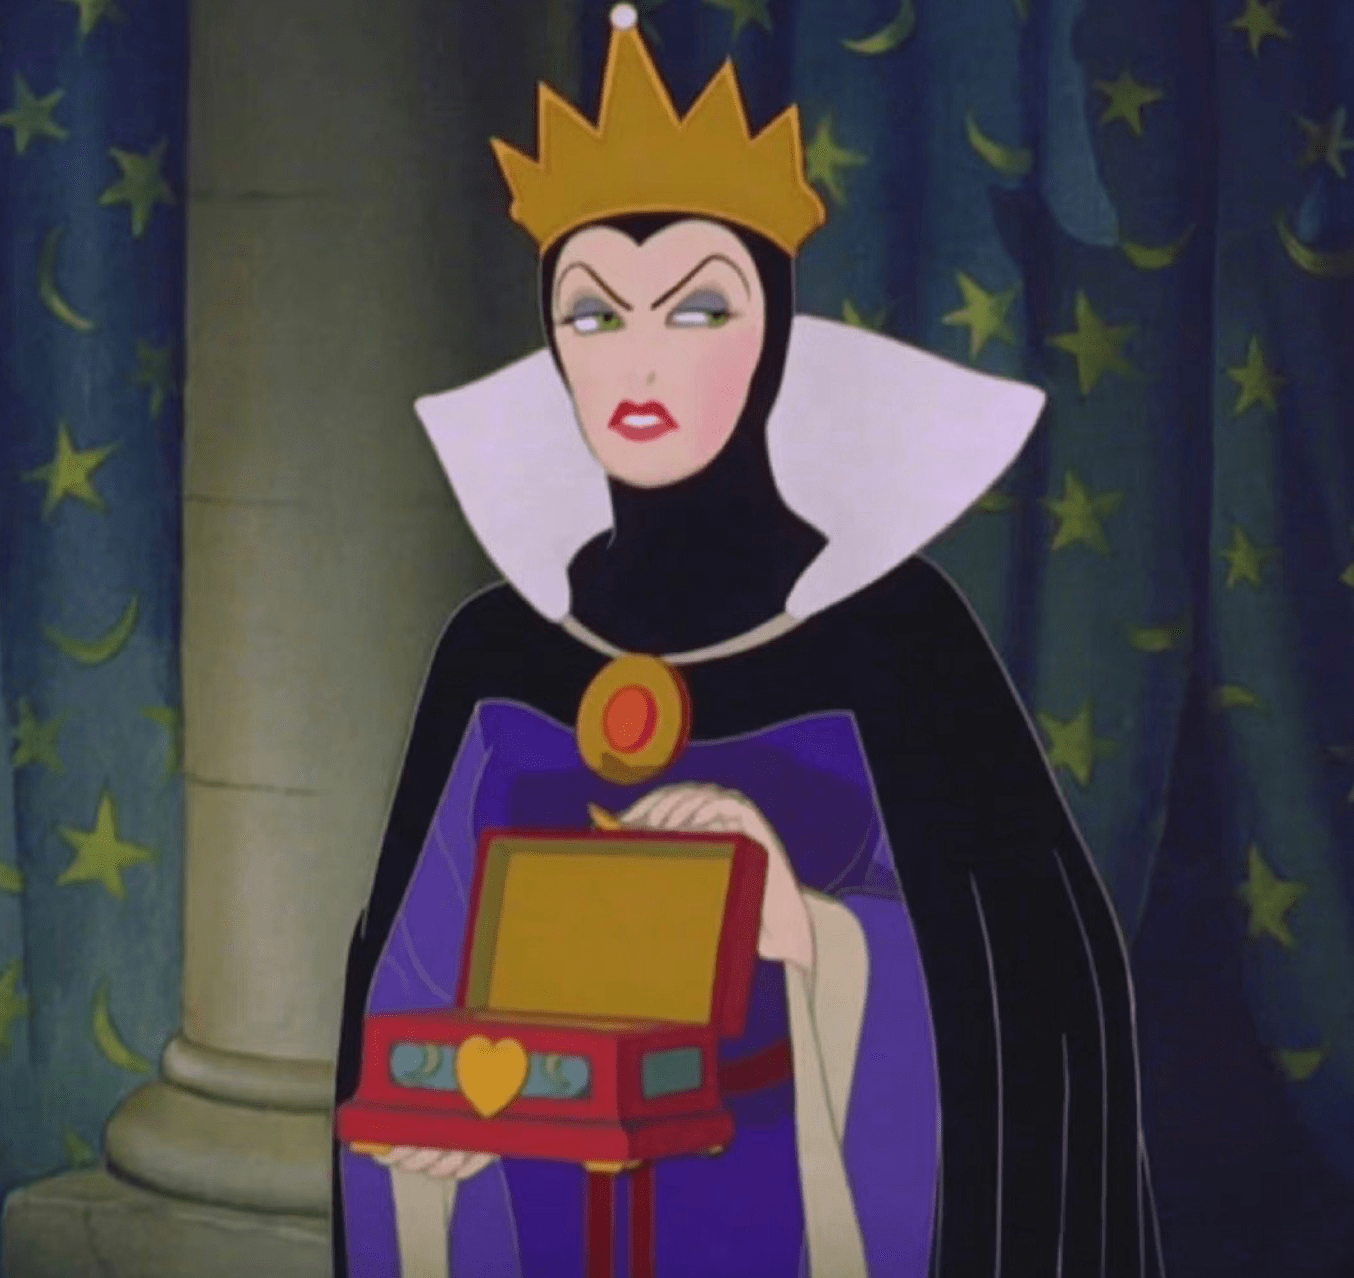 原创白雪公主男主确定皇后颜值比公主高网友调侃魔镜要看眼科